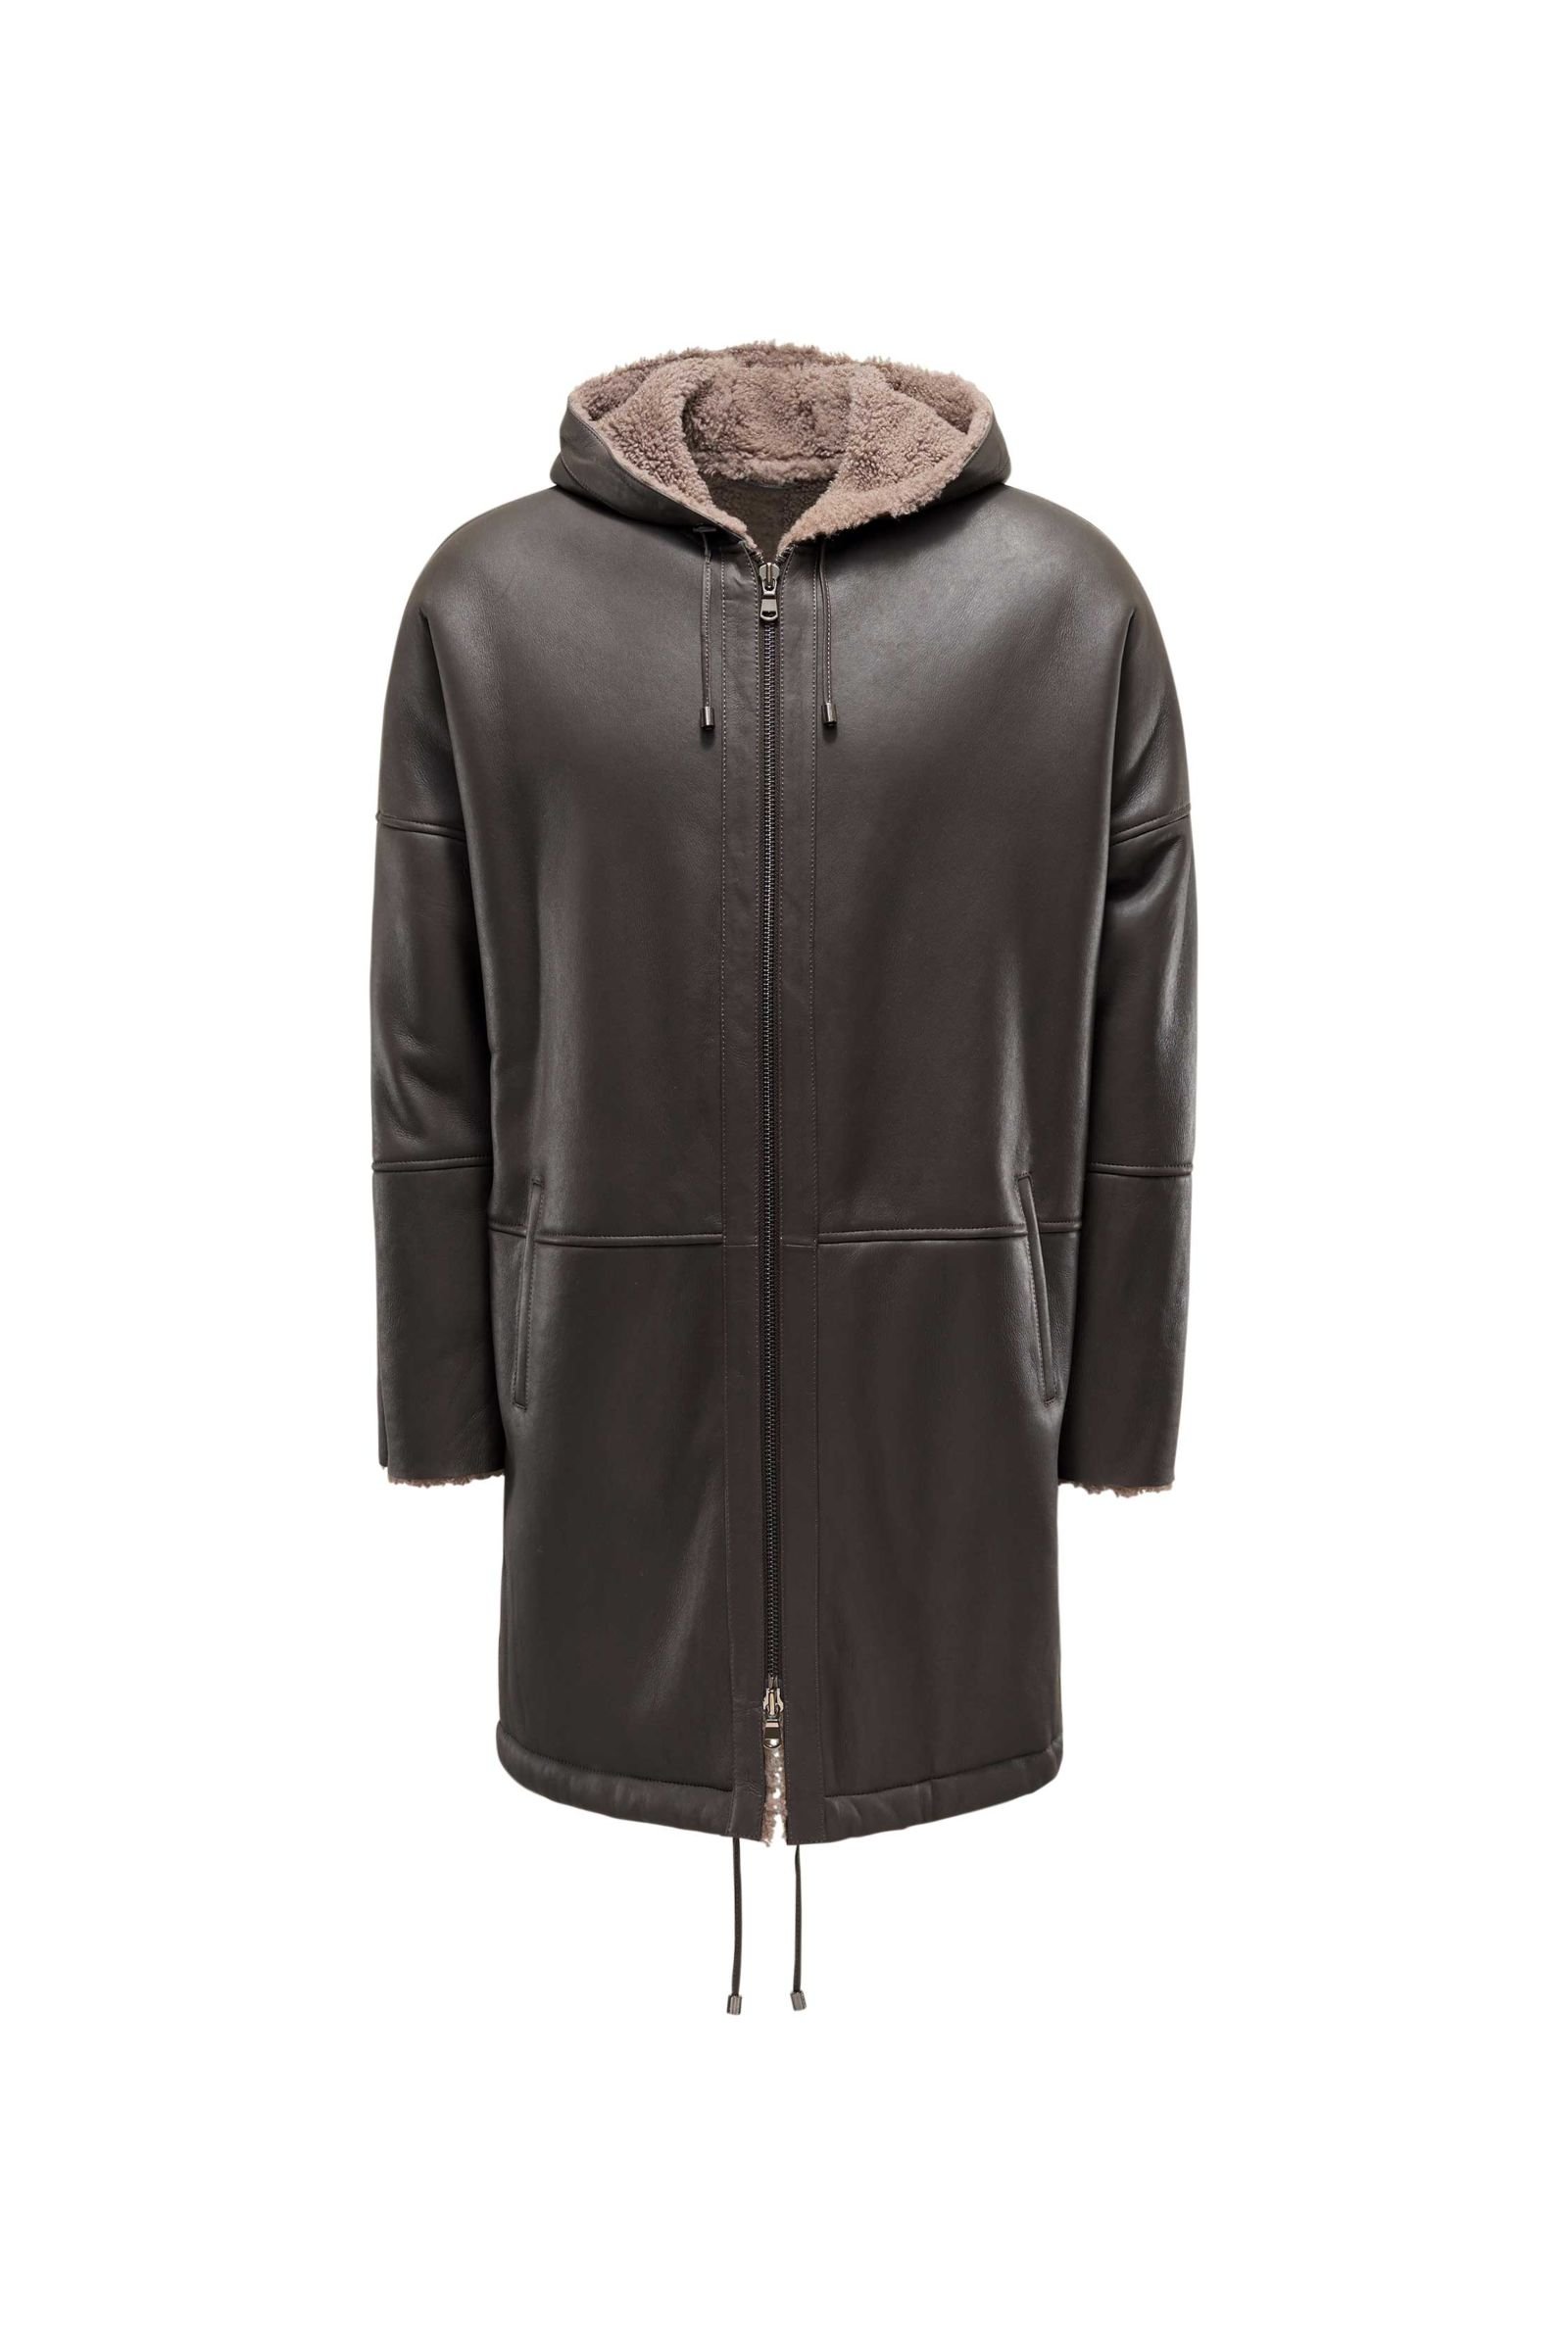 Shearling coat 'Ryan' grey-brown